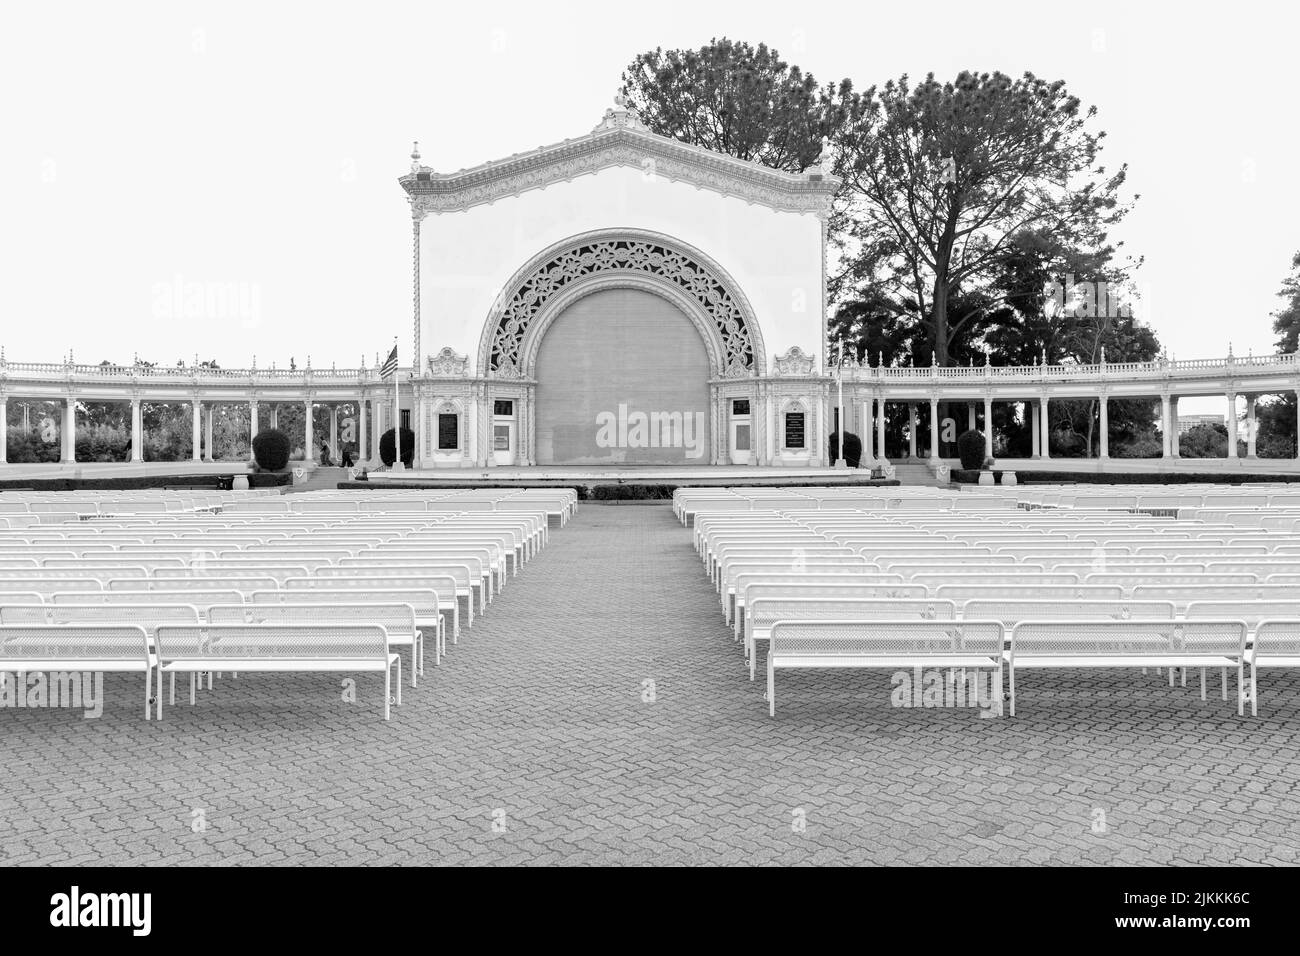 Una foto in scala di grigi dello Spreckels Organ Pavilion nel Balboa Park con posti a sedere vuoti Foto Stock